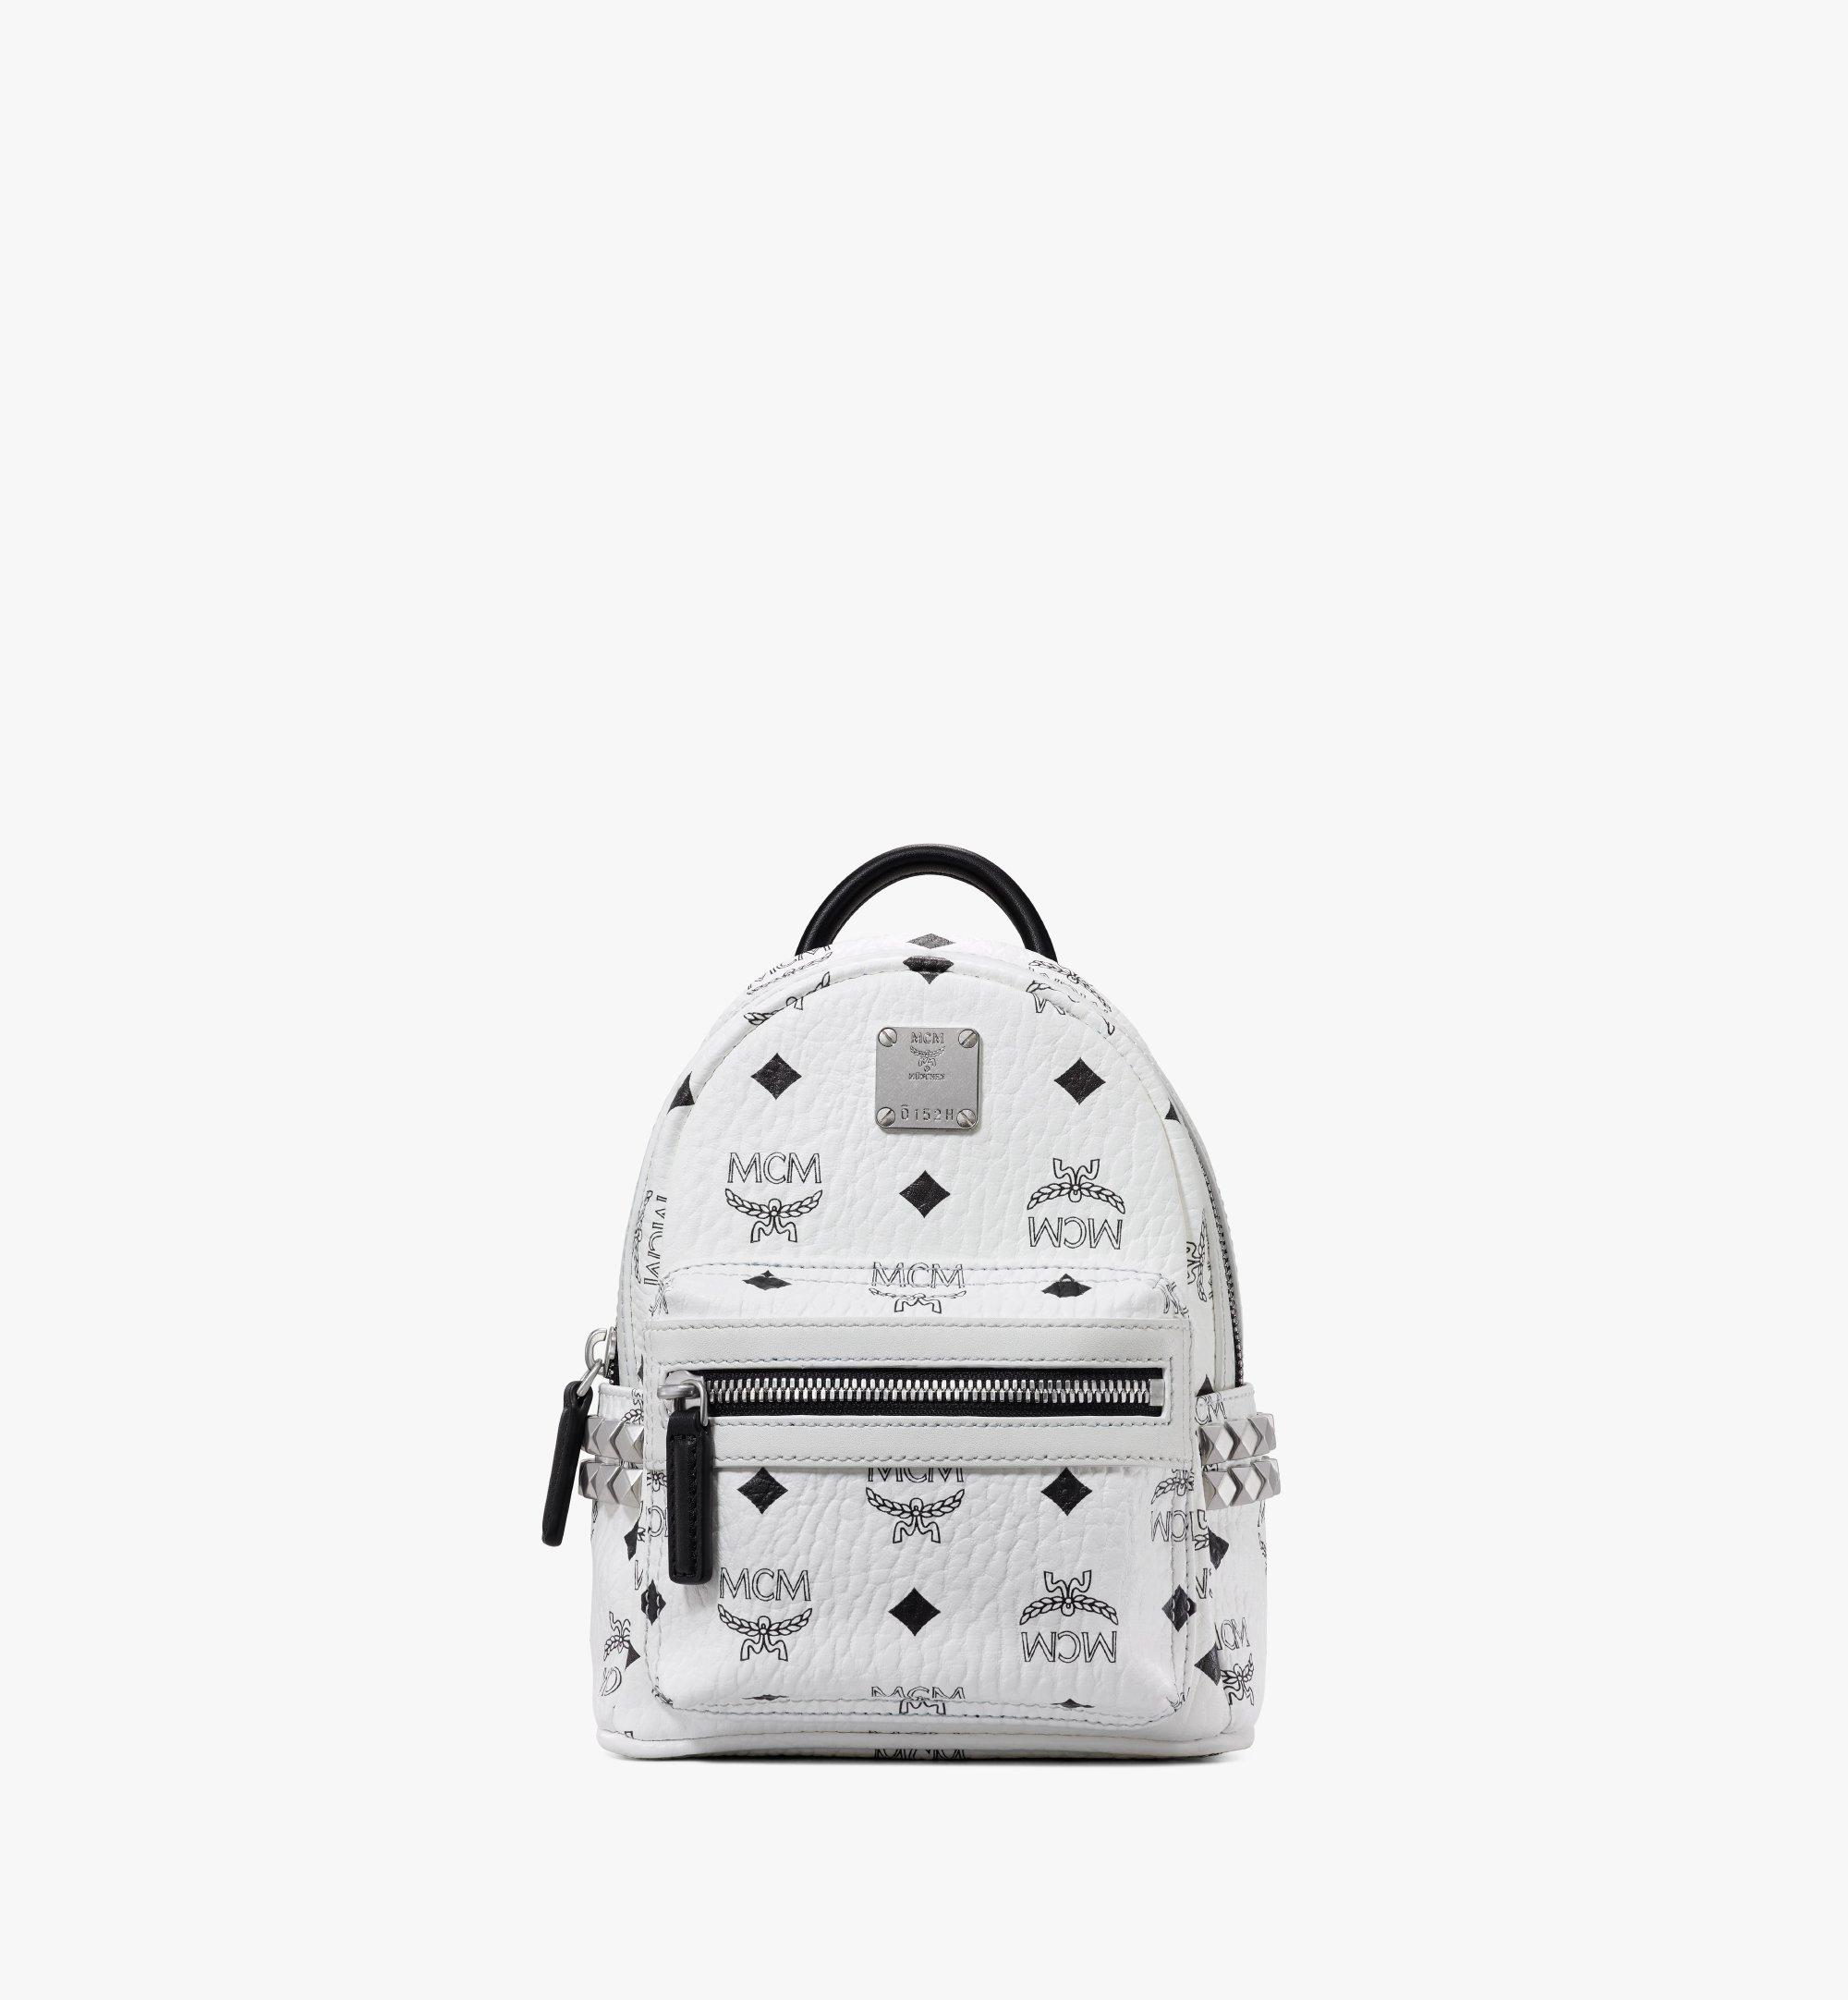 sold）MCM backpack  Mcm backpack, Mcm bag backpacks, Backpacks